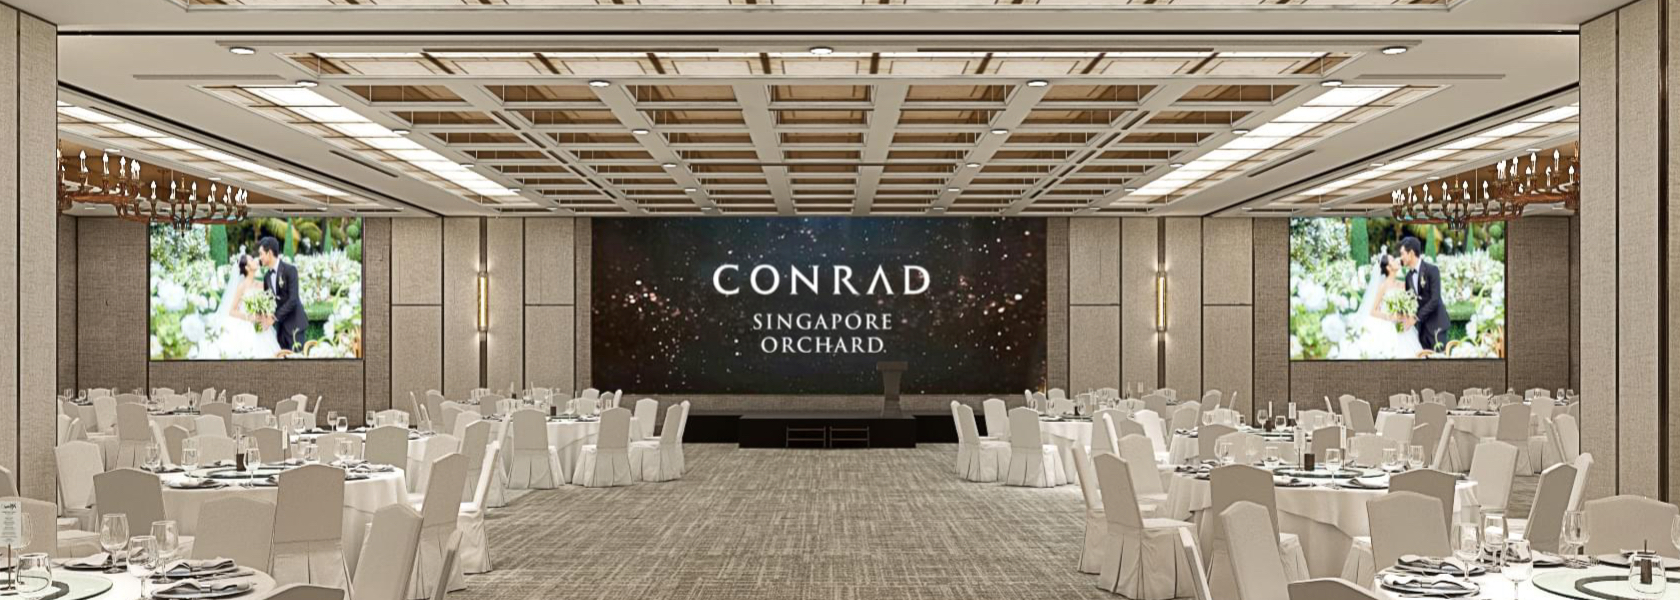 Conrad Singapore Orchard Hotel Wedding Singapore Hitcheed